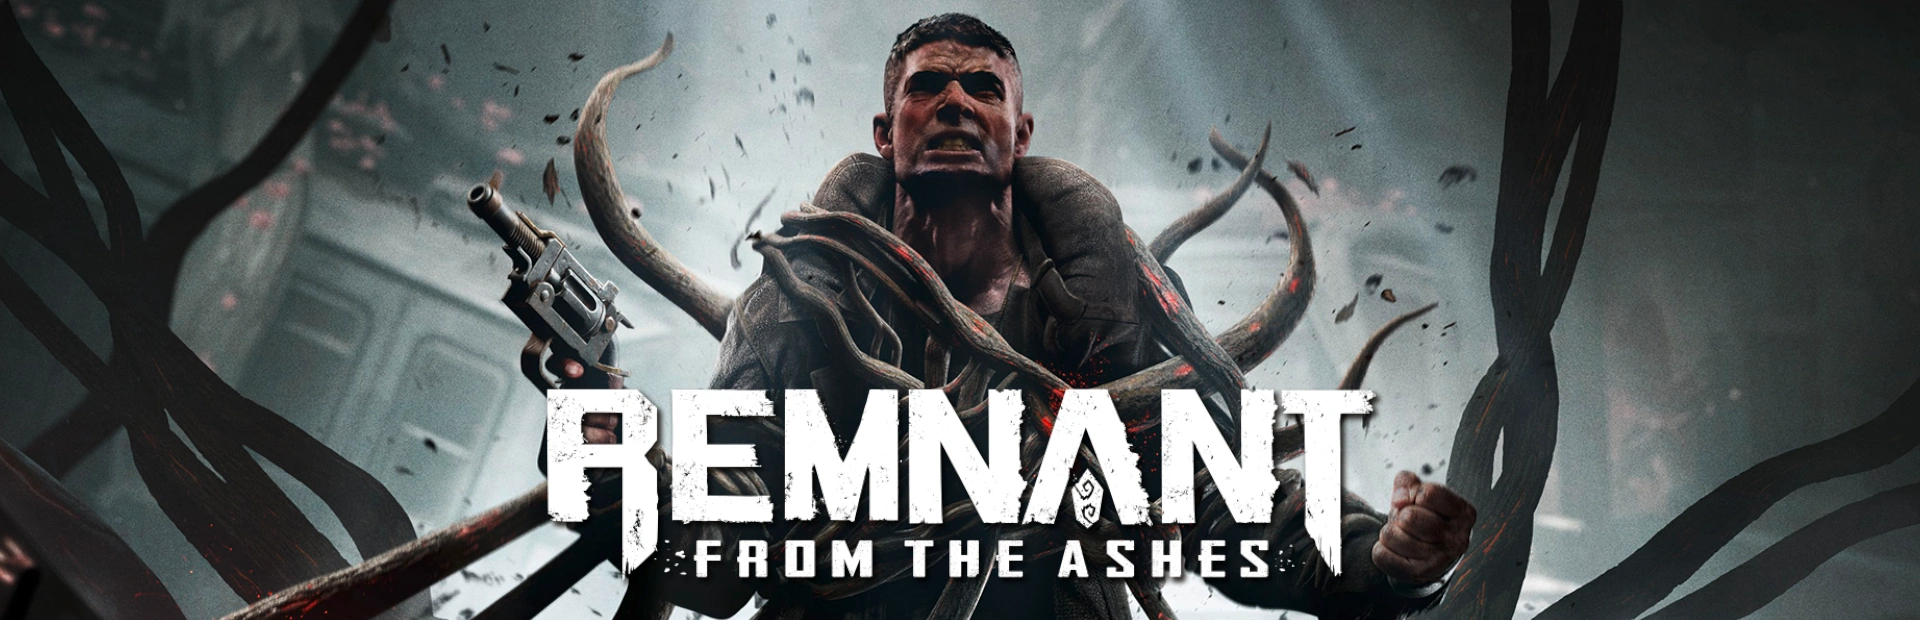 دانلود بازی Remnant: From the Ashes برای کامپیوتر | گیمباتو